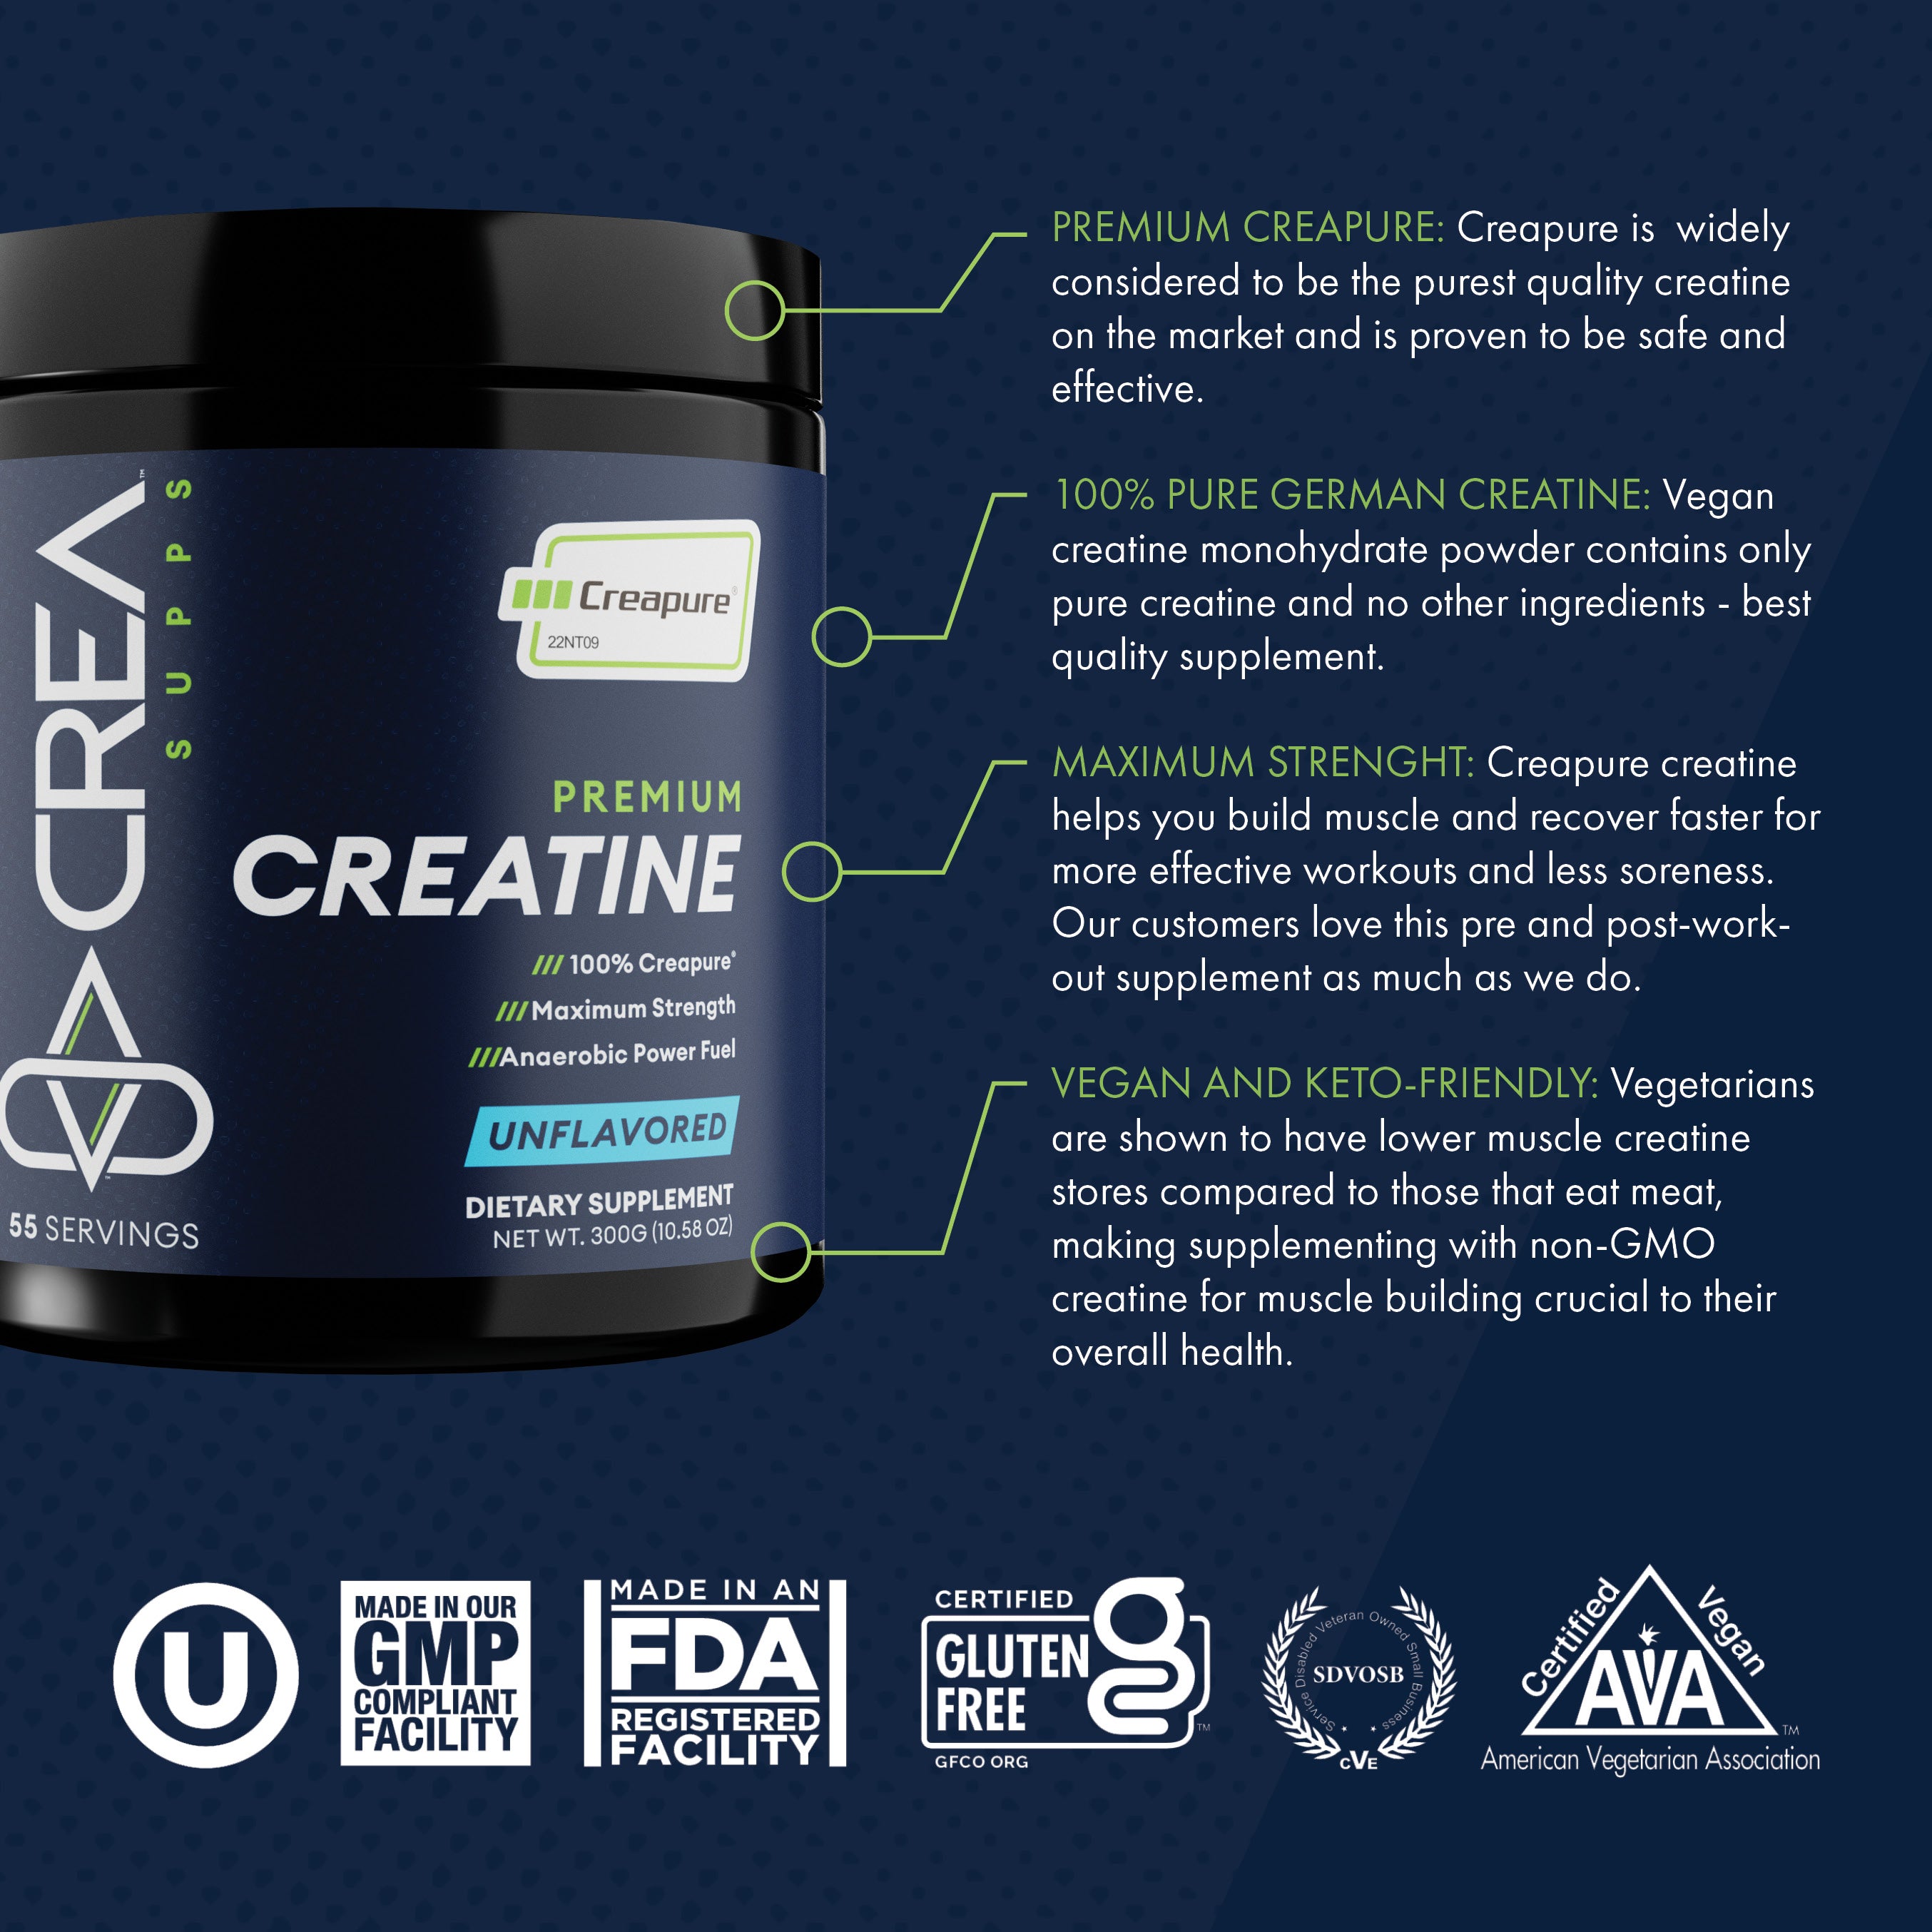 Creatine Monohydrate Powder 5g - Premium Creatine Supplement for